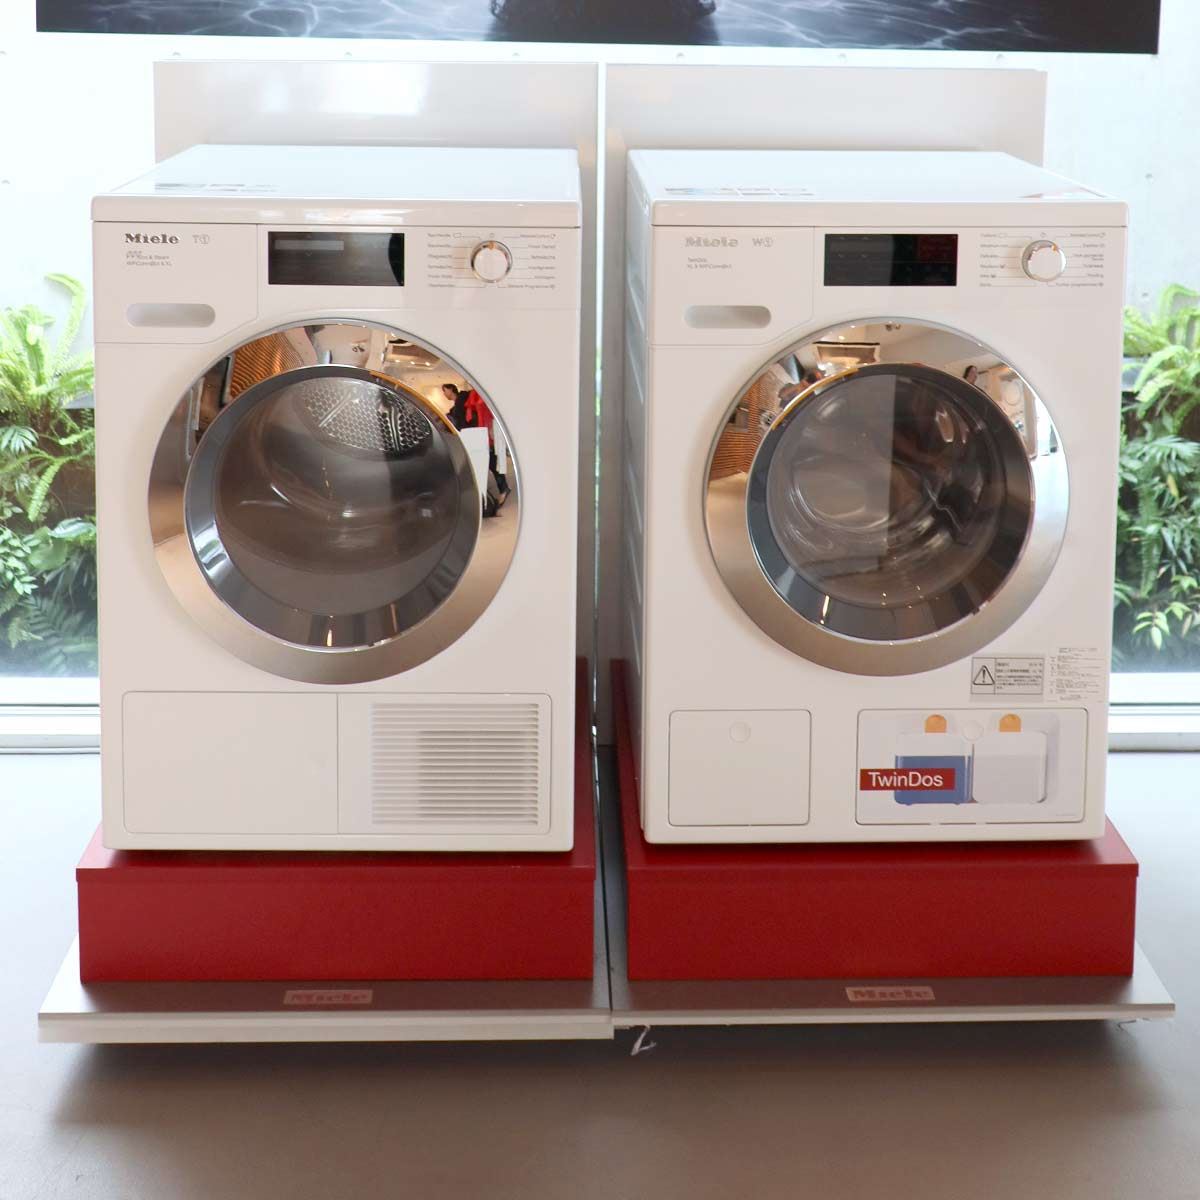 ドイツの高級家電ブランド・ミーレが発売したWi-Fiドラム式洗濯機「W1 ...